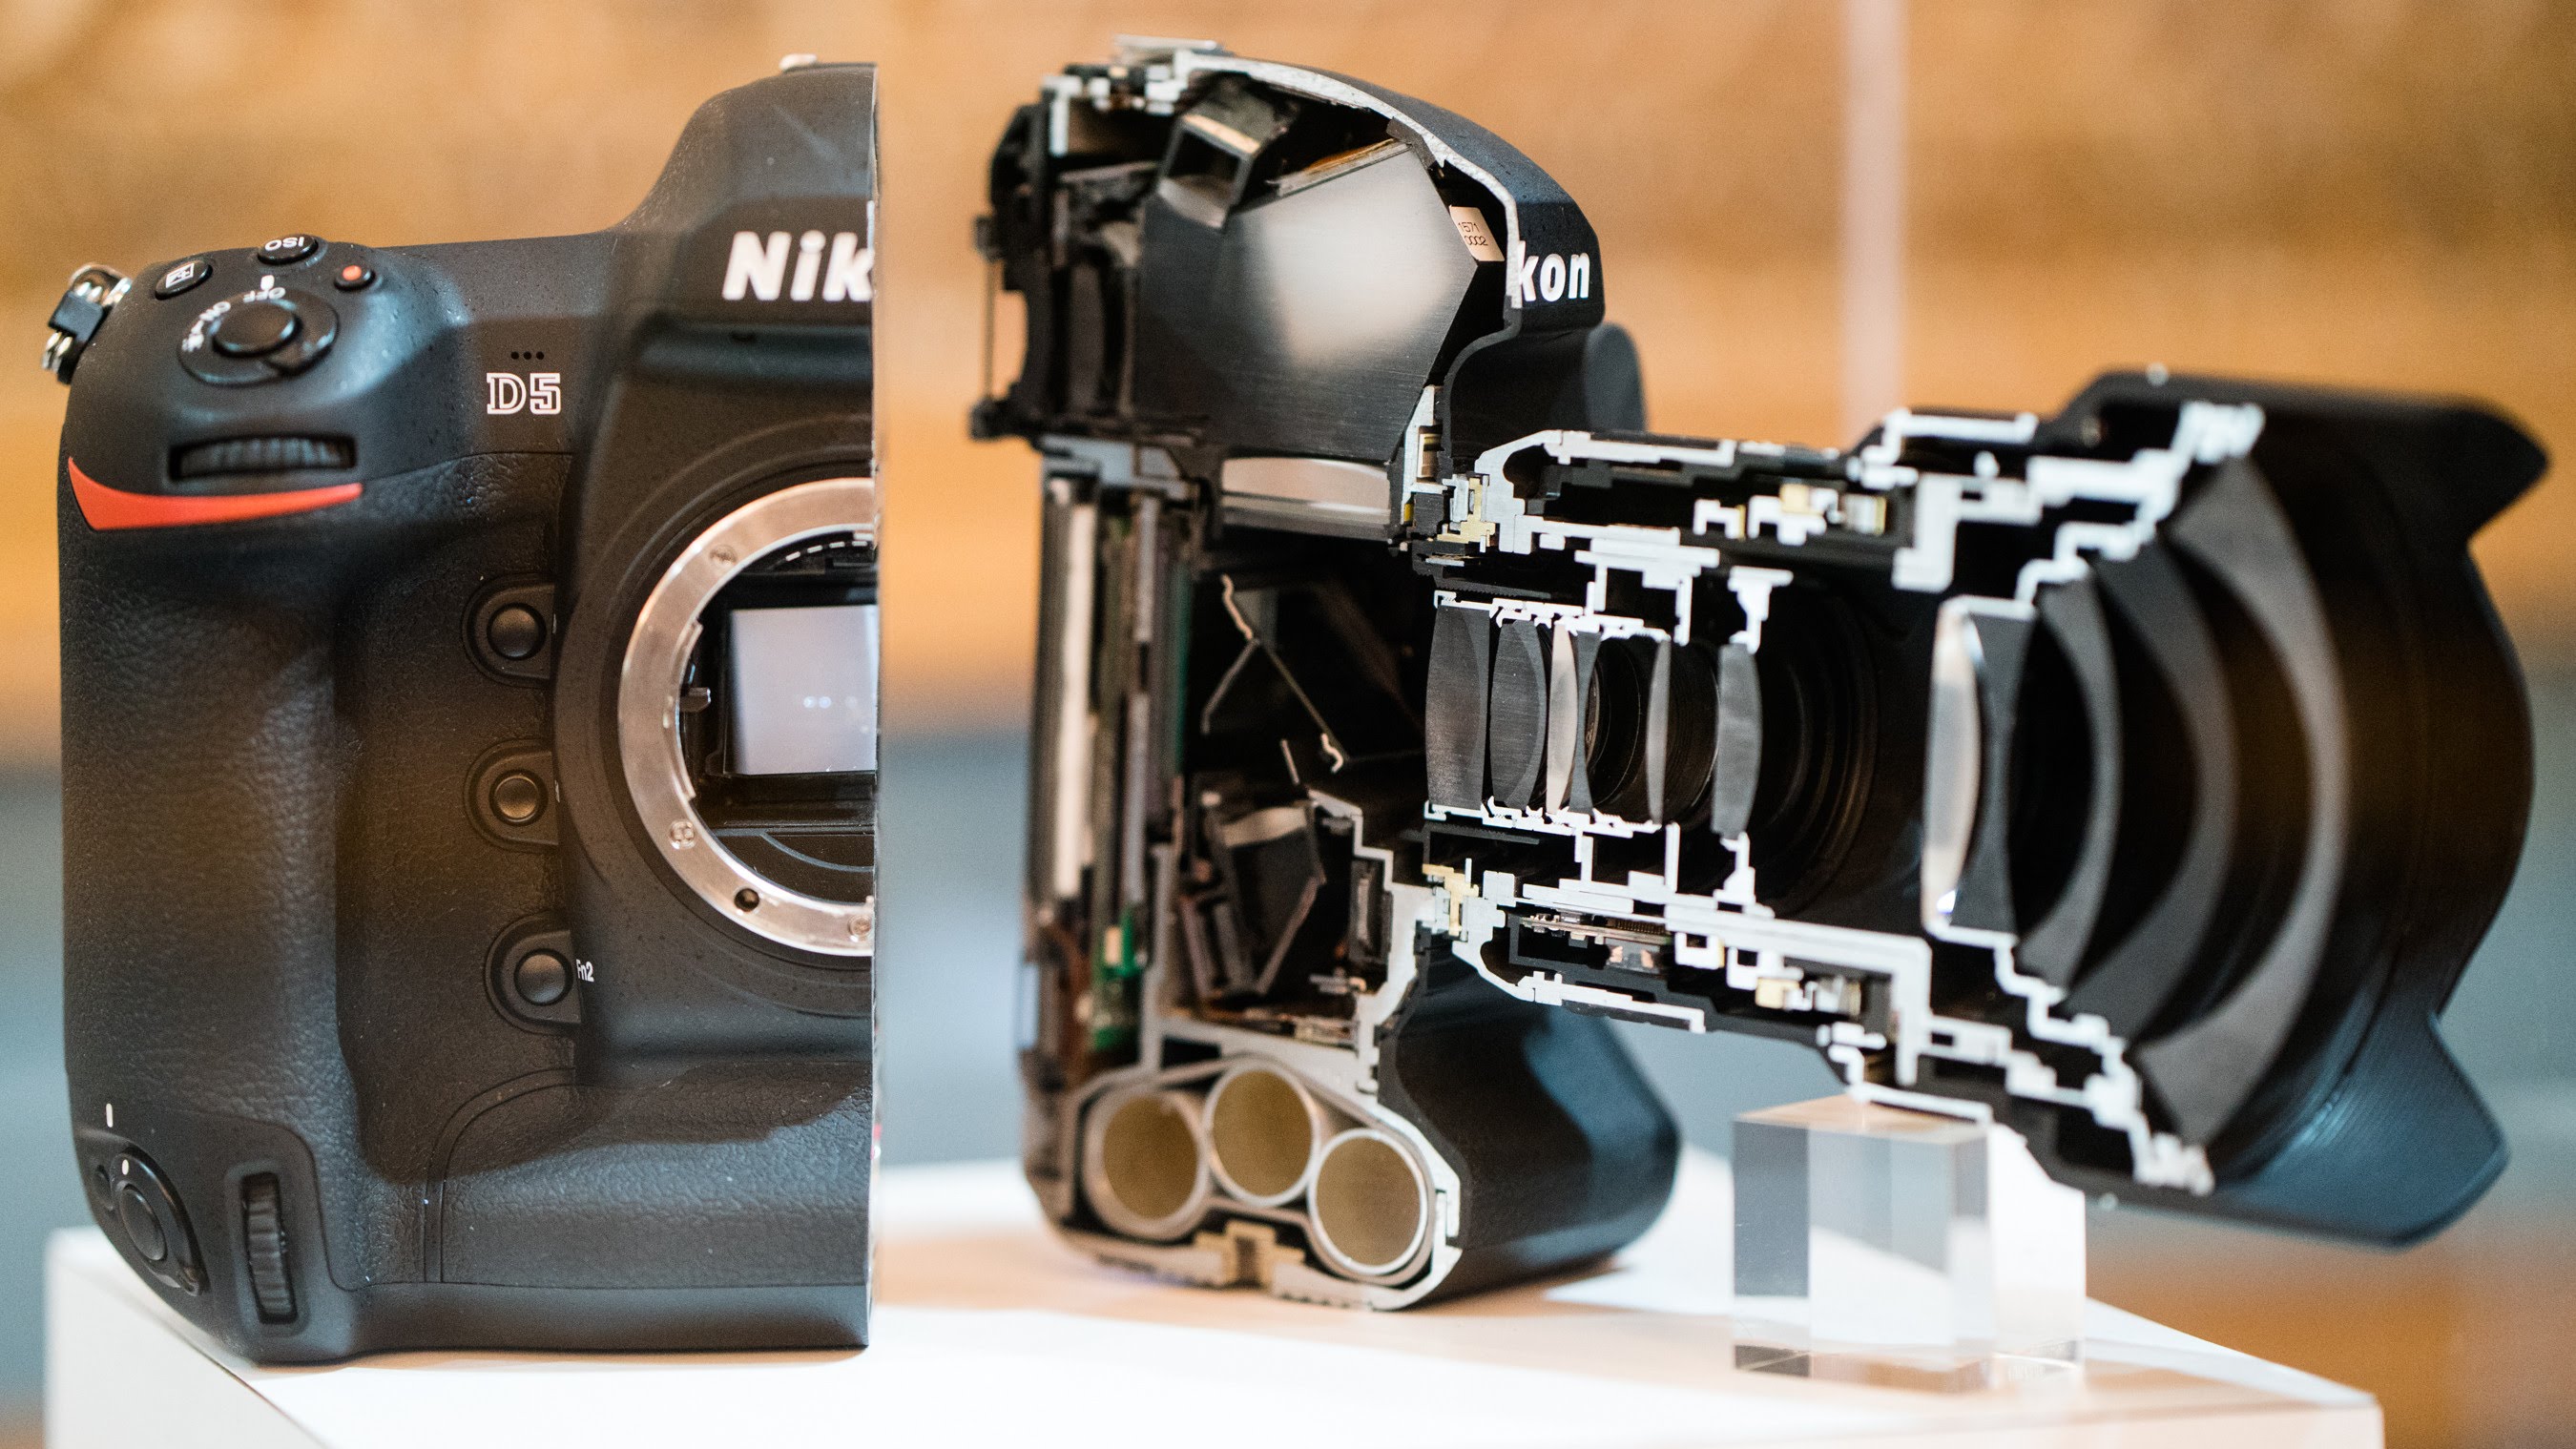 Nikon анонсировала новую флагманскую камеру с разрешением видео 4k и максимальной светочувствительностью 3 миллиона ISO